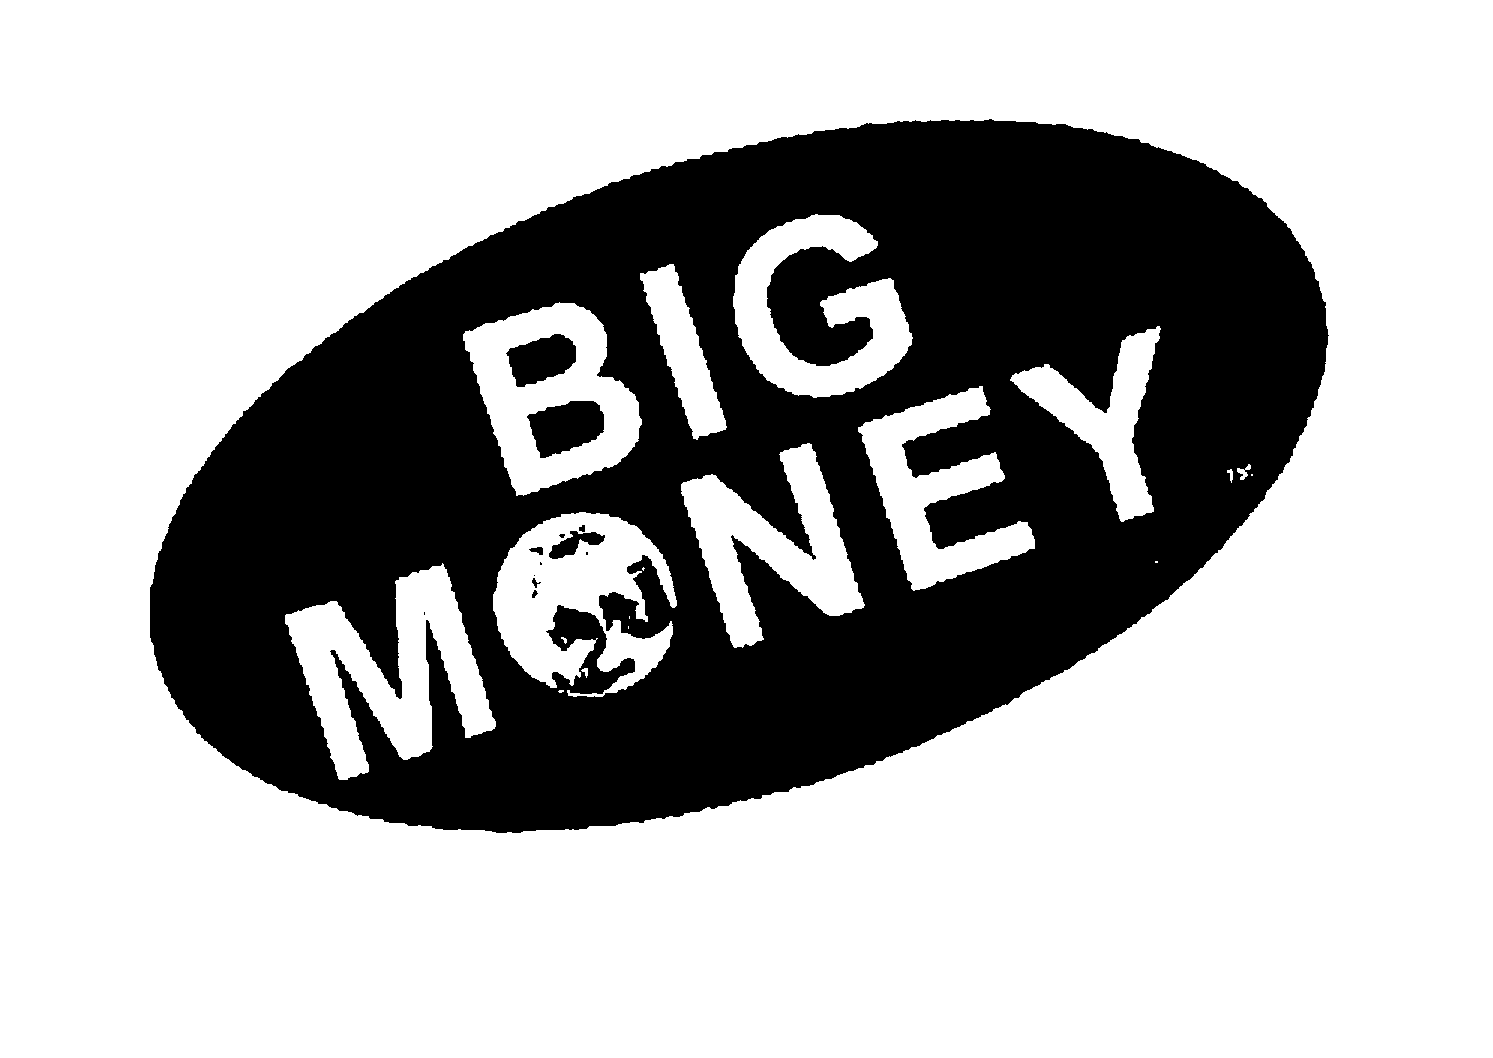 BIG MONEY